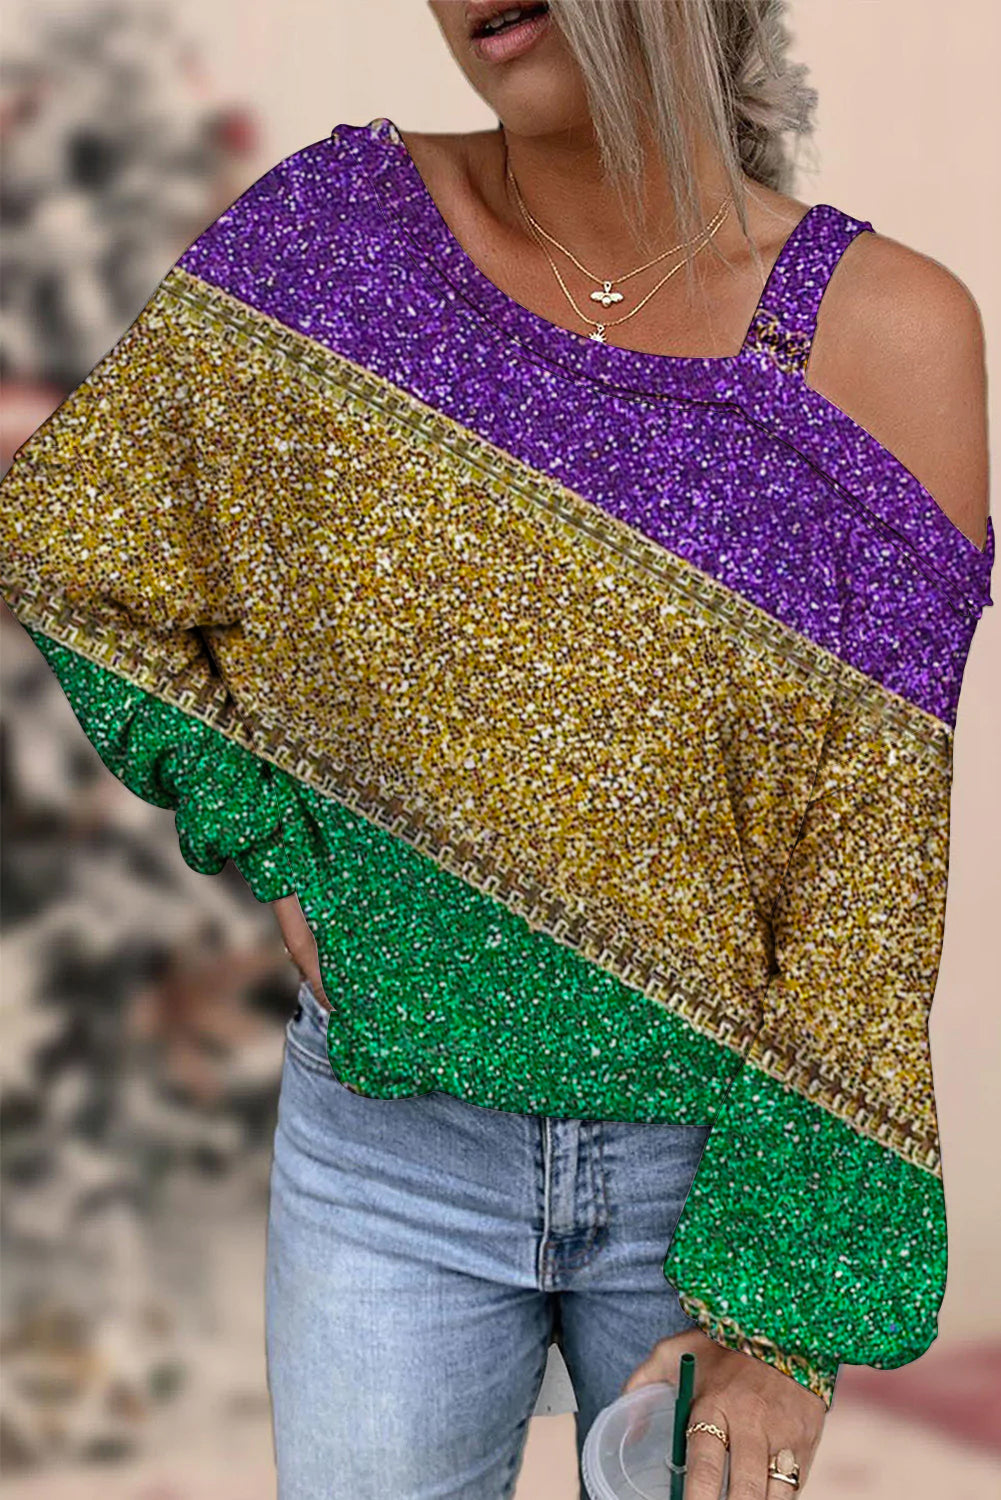 Retro Mardi Gras Carnival Purple Green And Gold Color Block Glitz Print Off-Shoulder Blouse